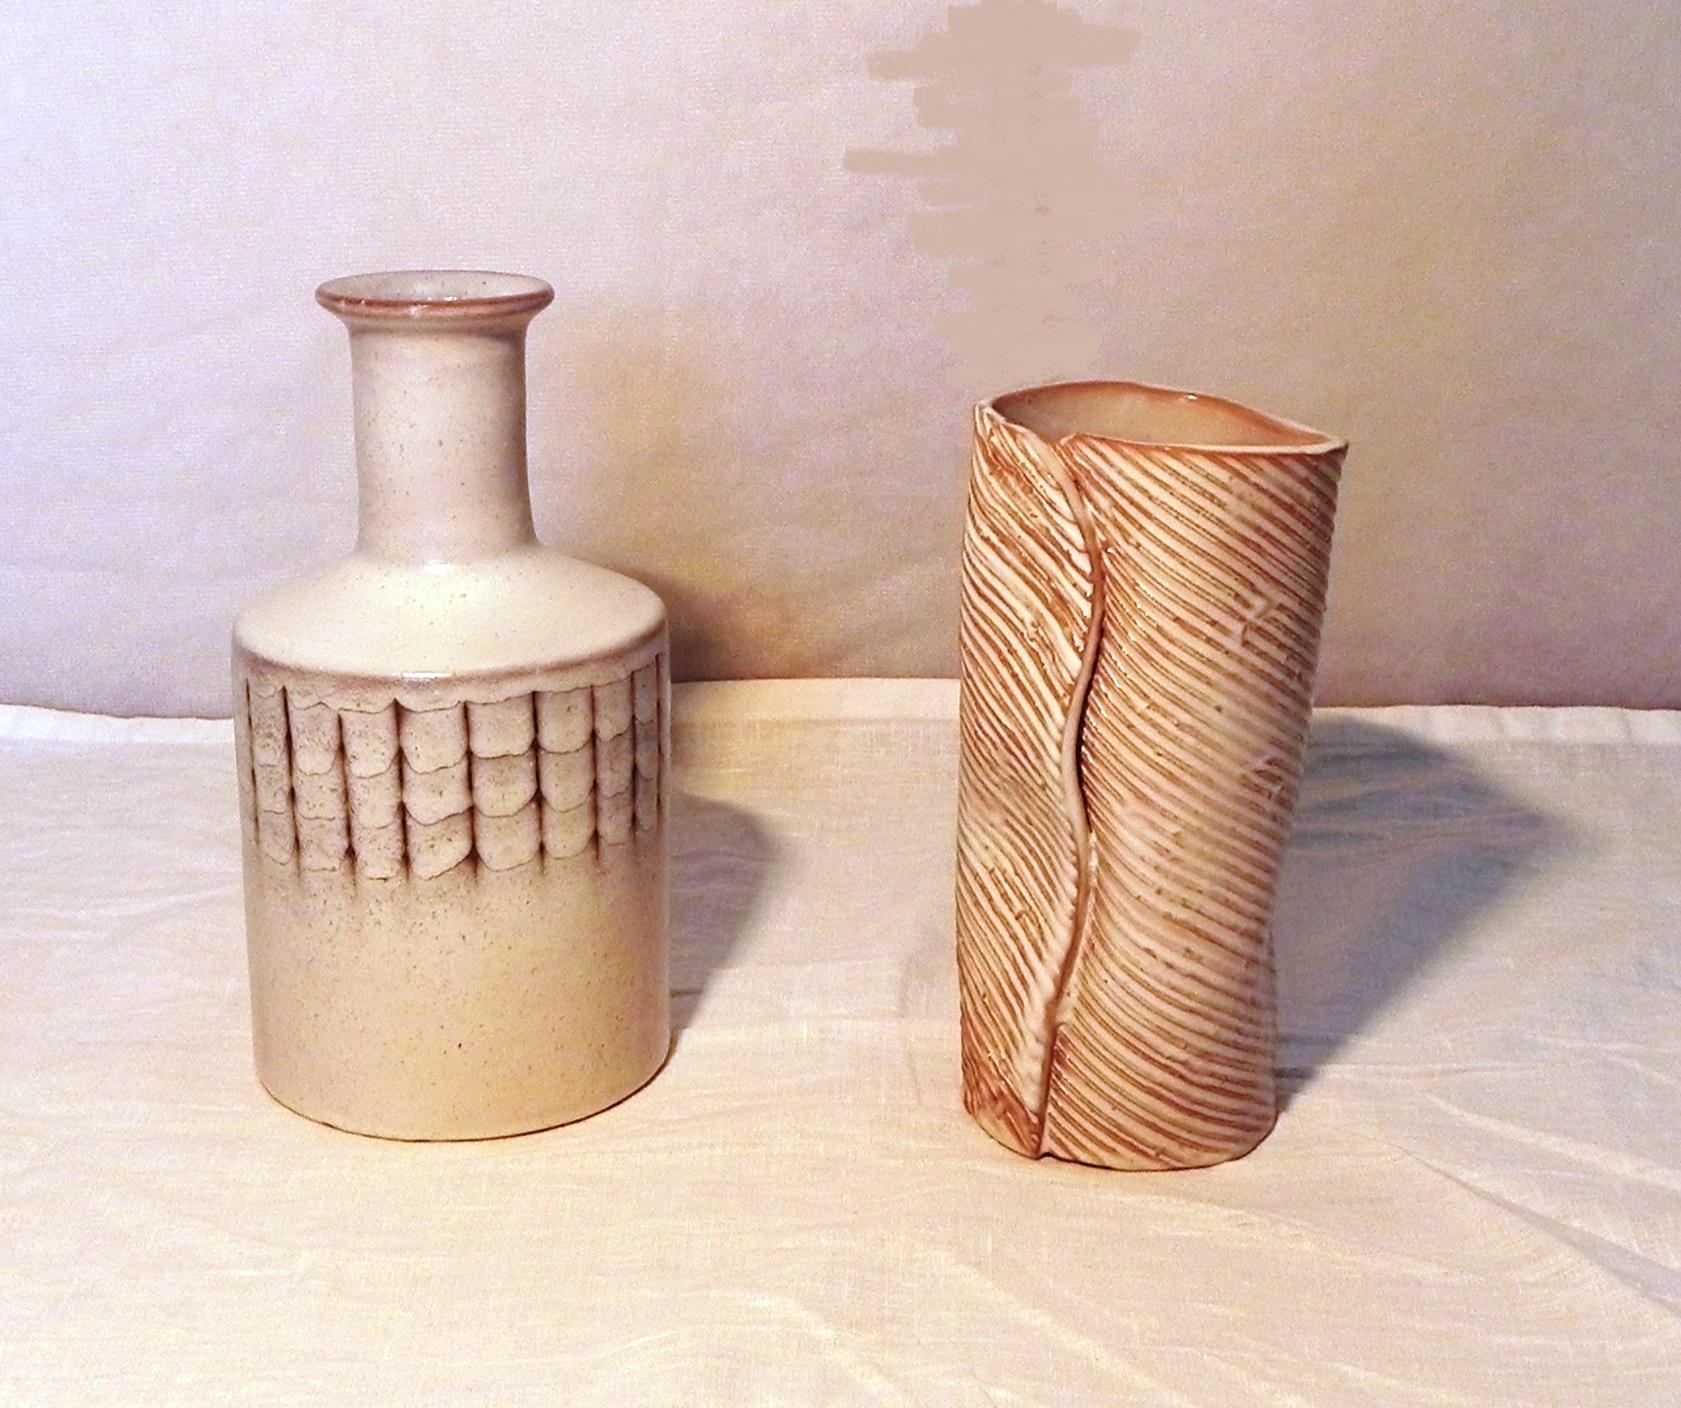 pair ceramics signature Menozzi, 1970s. 1 glazed ceramic bottle h 25 cm. diam 13 cm - 1 glazed ceramic flower vase h 22 cm. diam 10 cm both in perfect condition. signature below the base.